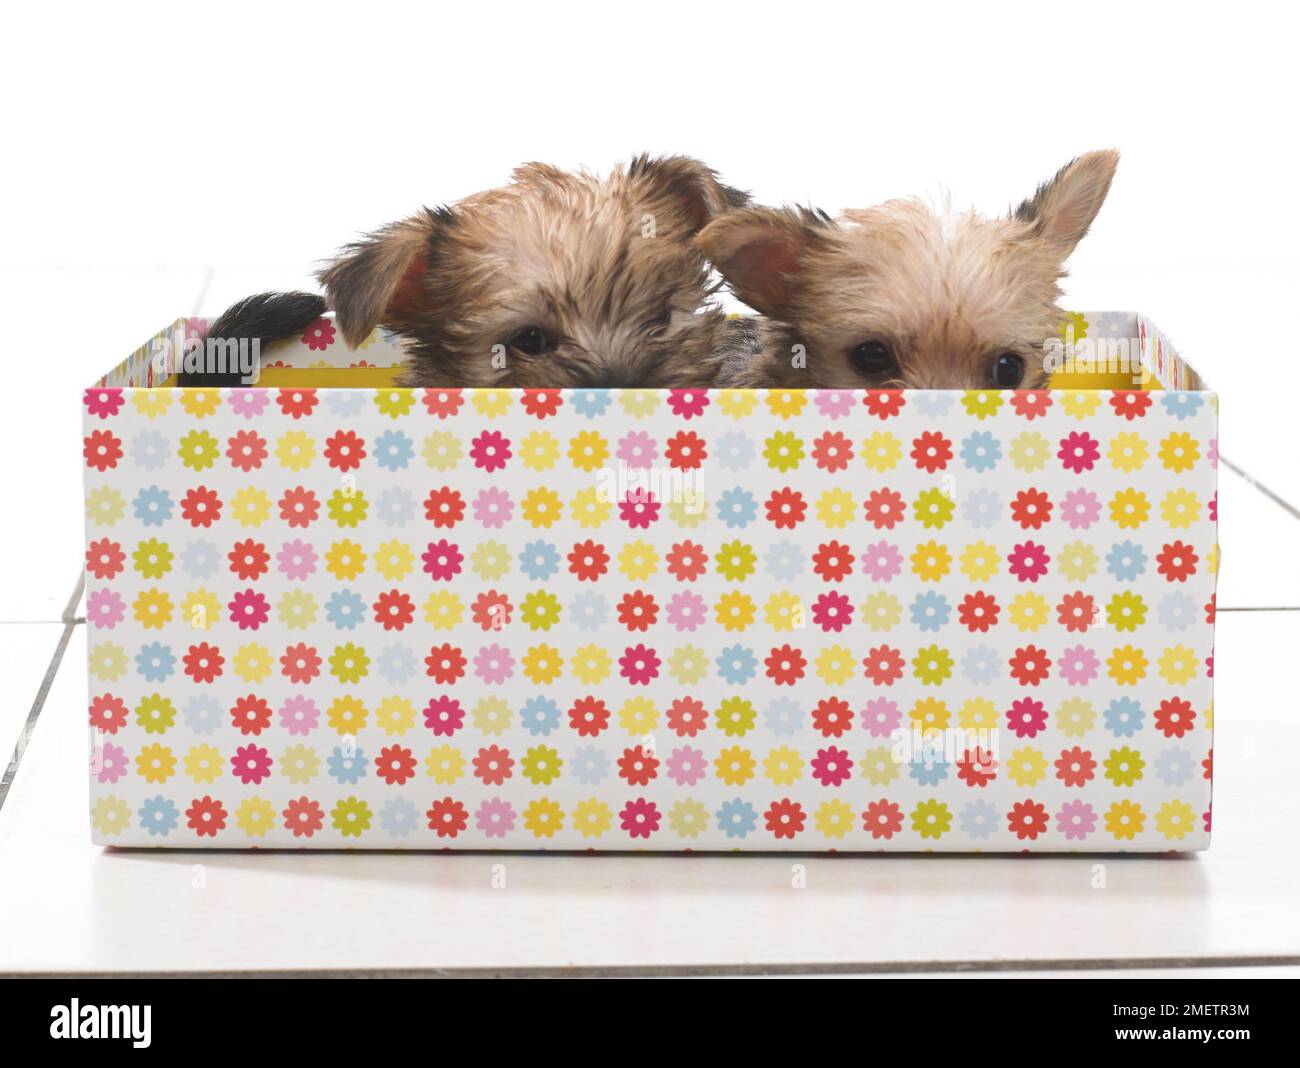 Due cuccioli sbirciano dalla parte superiore della scatola colorata Foto Stock